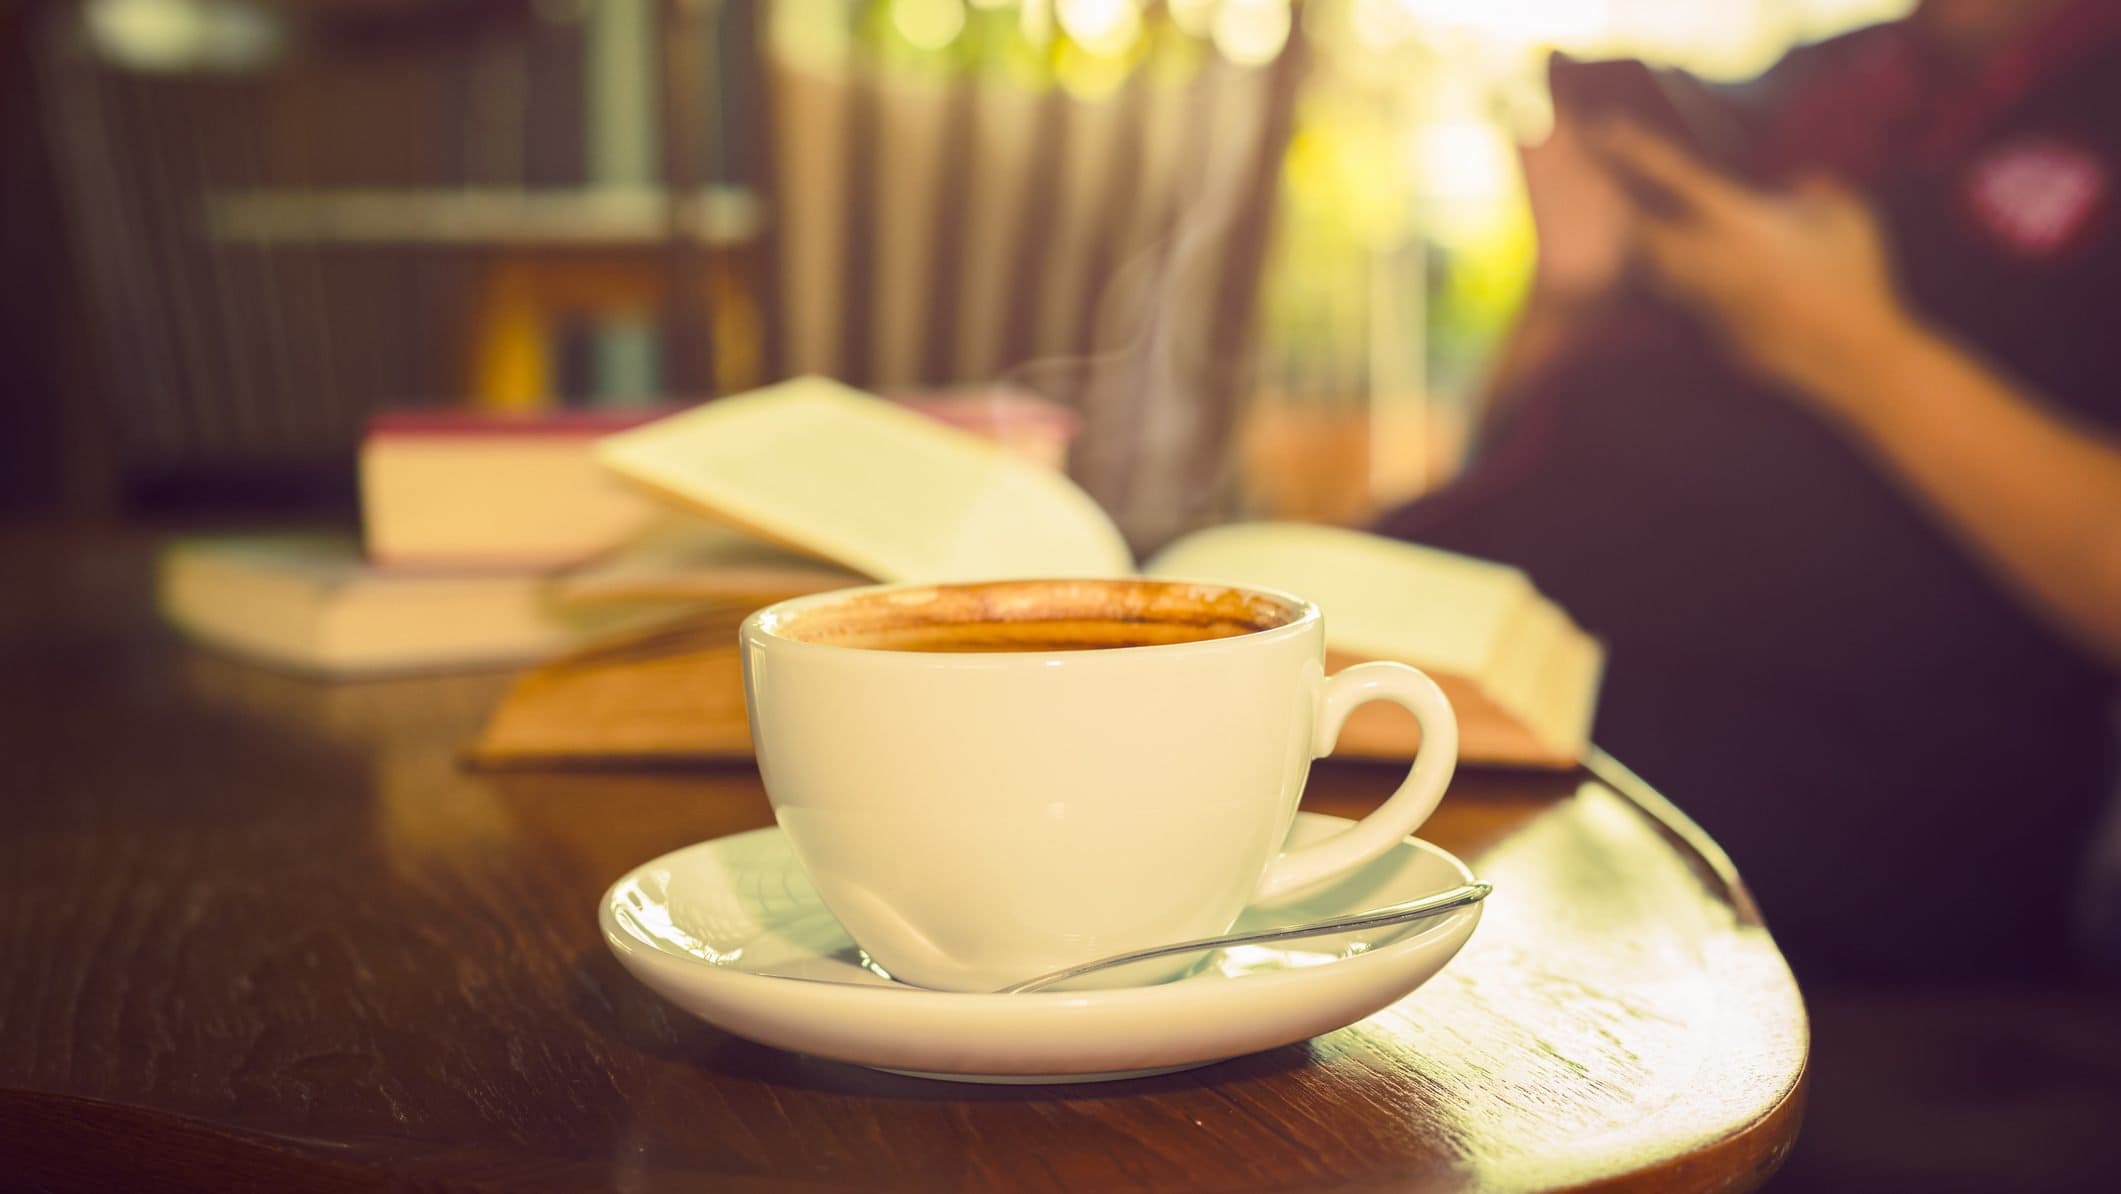 Frontal eine weiße Kaffeetasse mit Untertasse steht in einem Raum auf einem dunklen, runden Holztischchen. Dahinter liegen mehrere Bücher, zum teil aufgeschlagen.